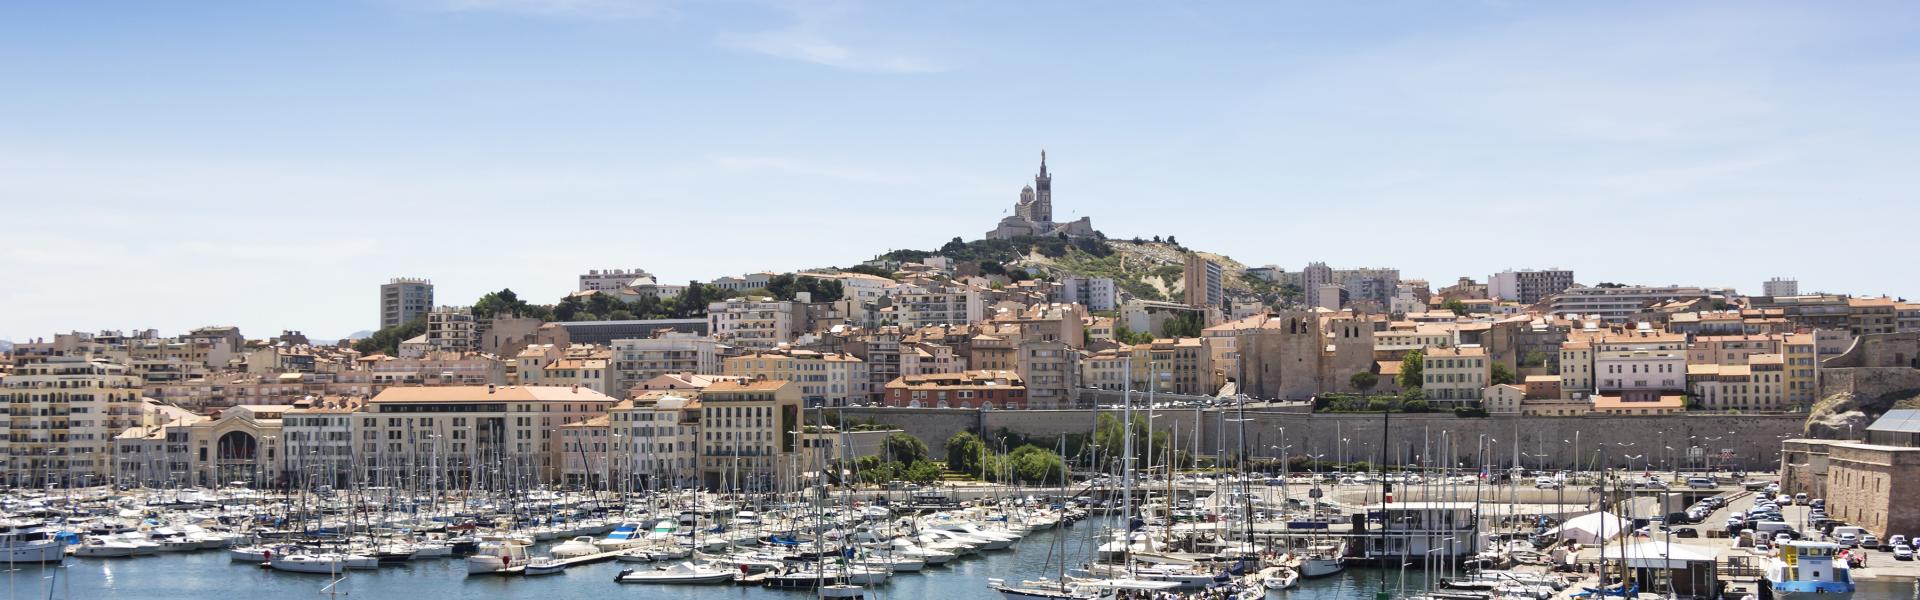 Location de vacances à Marseille - Bouches-du-Rhône - amivac